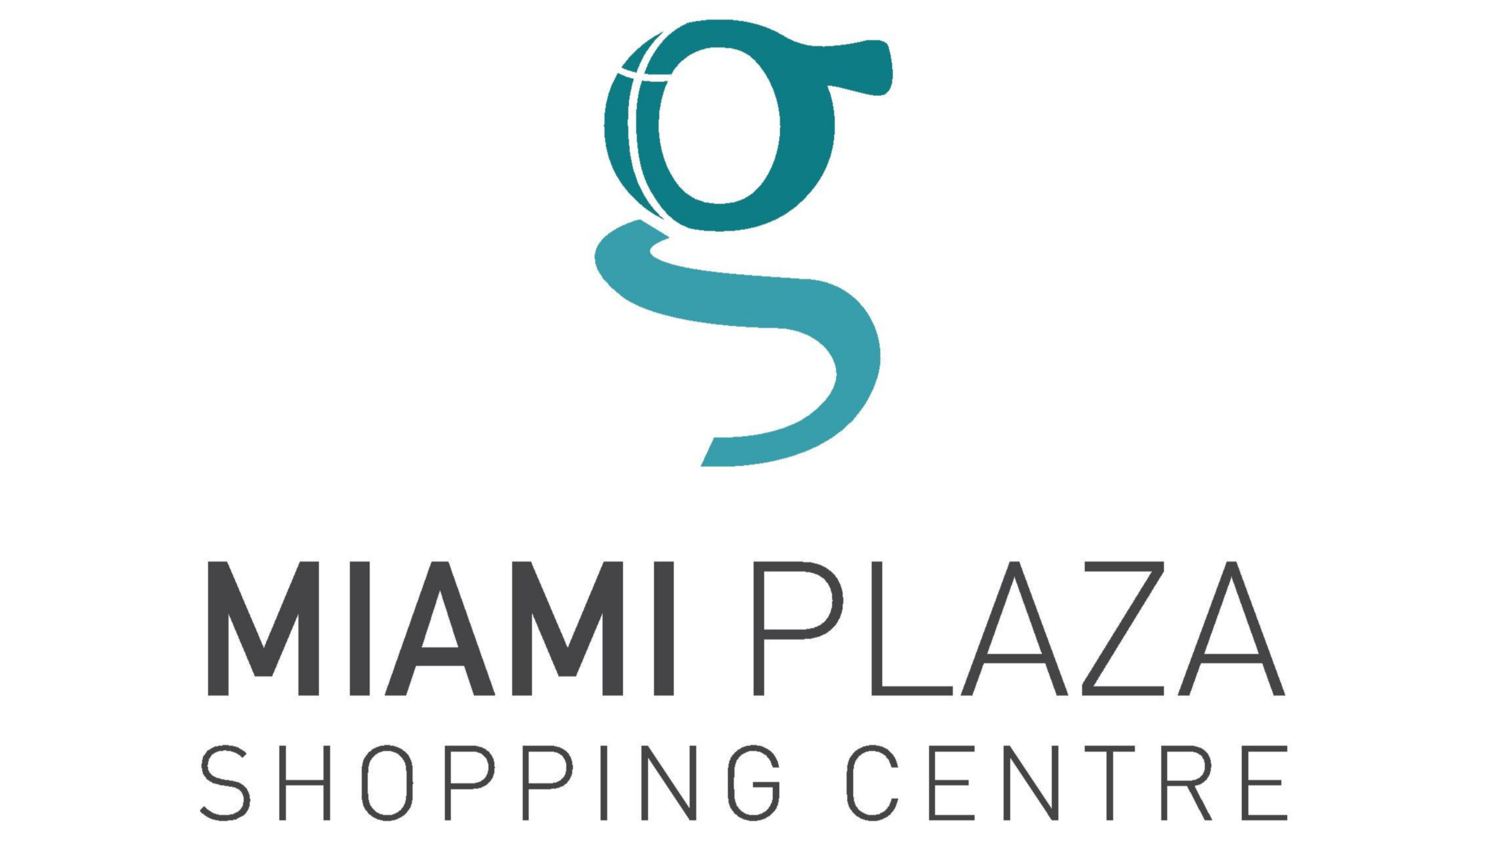 Miami Plaza Shopping Centre